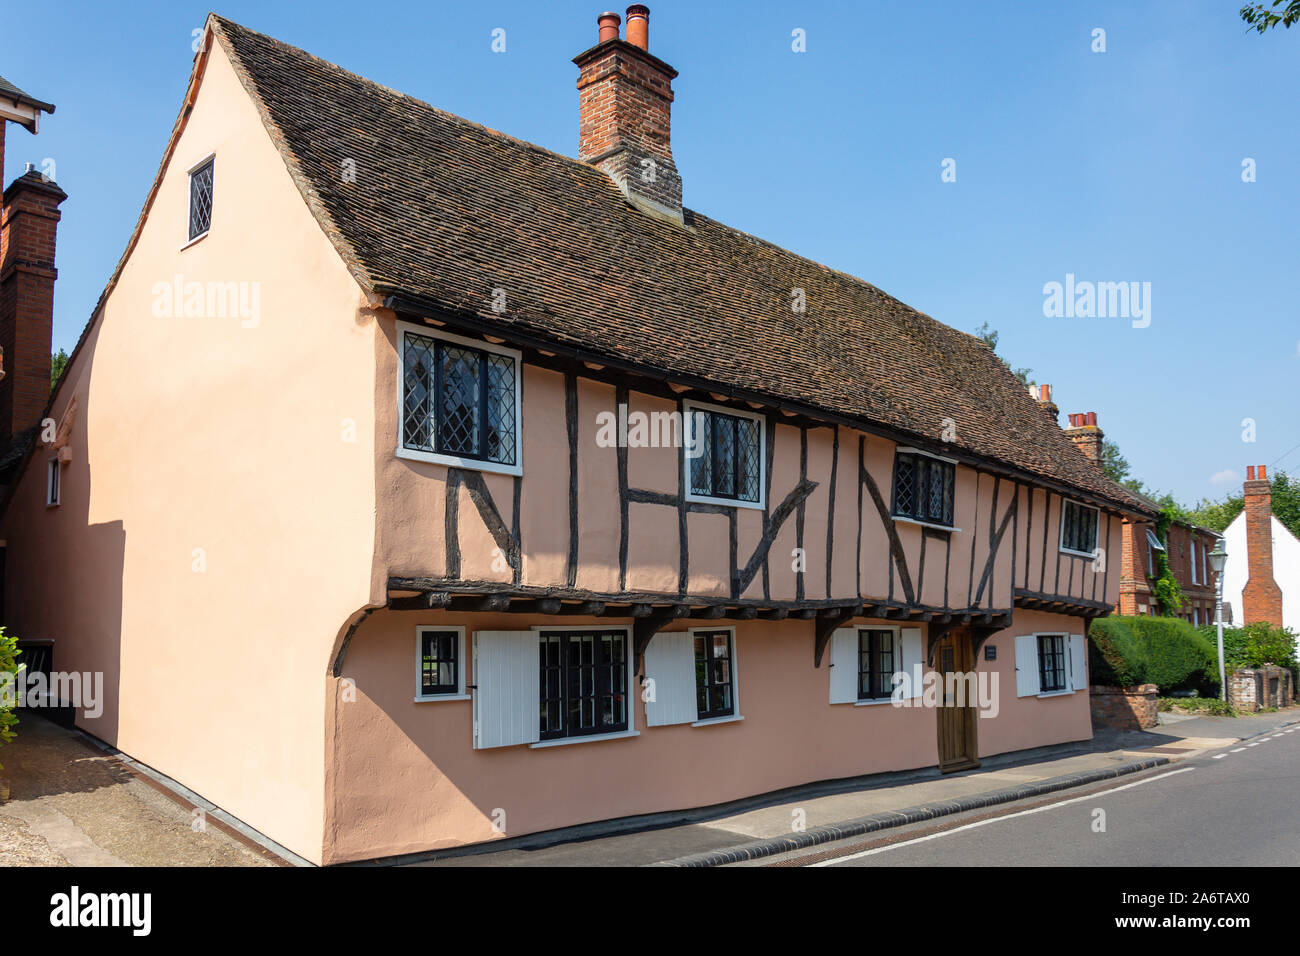 Maison à pans de bois de la période, High Street, Much Hadham, Hertfordshire, Angleterre, Royaume-Uni Banque D'Images